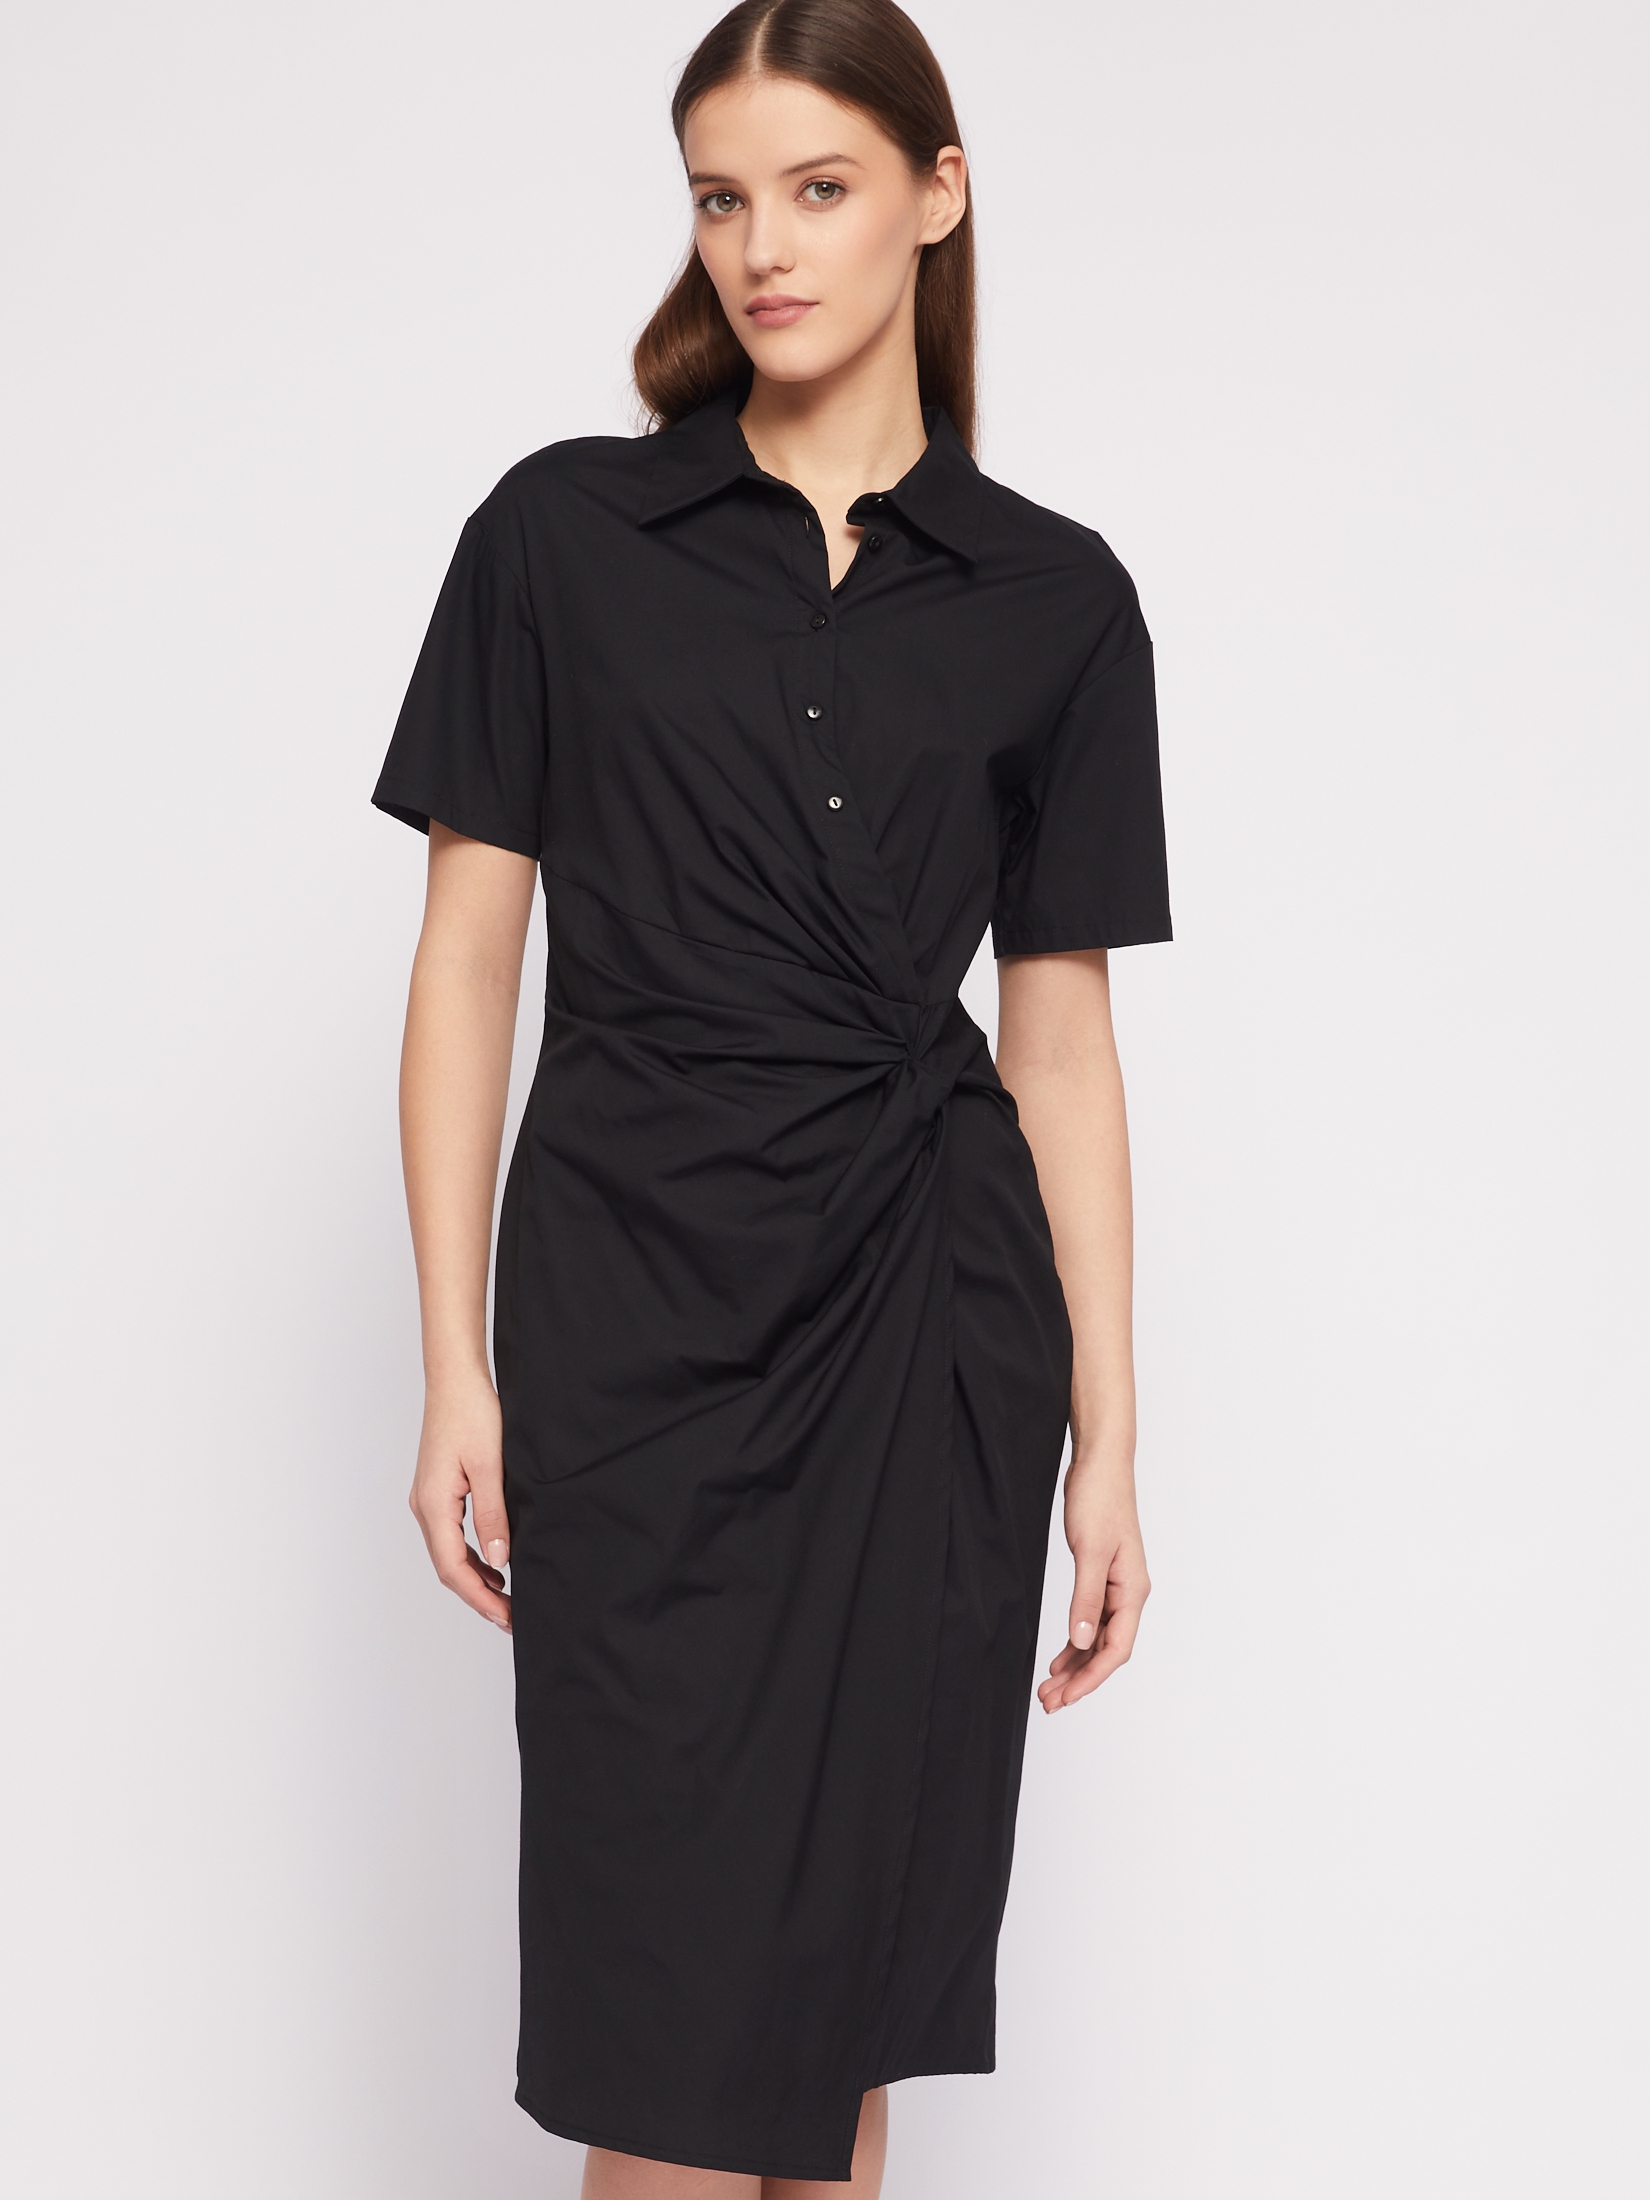 Платье-рубашка из хлопка с драпировкой и запахом zolla 024218291011, цвет черный, размер S